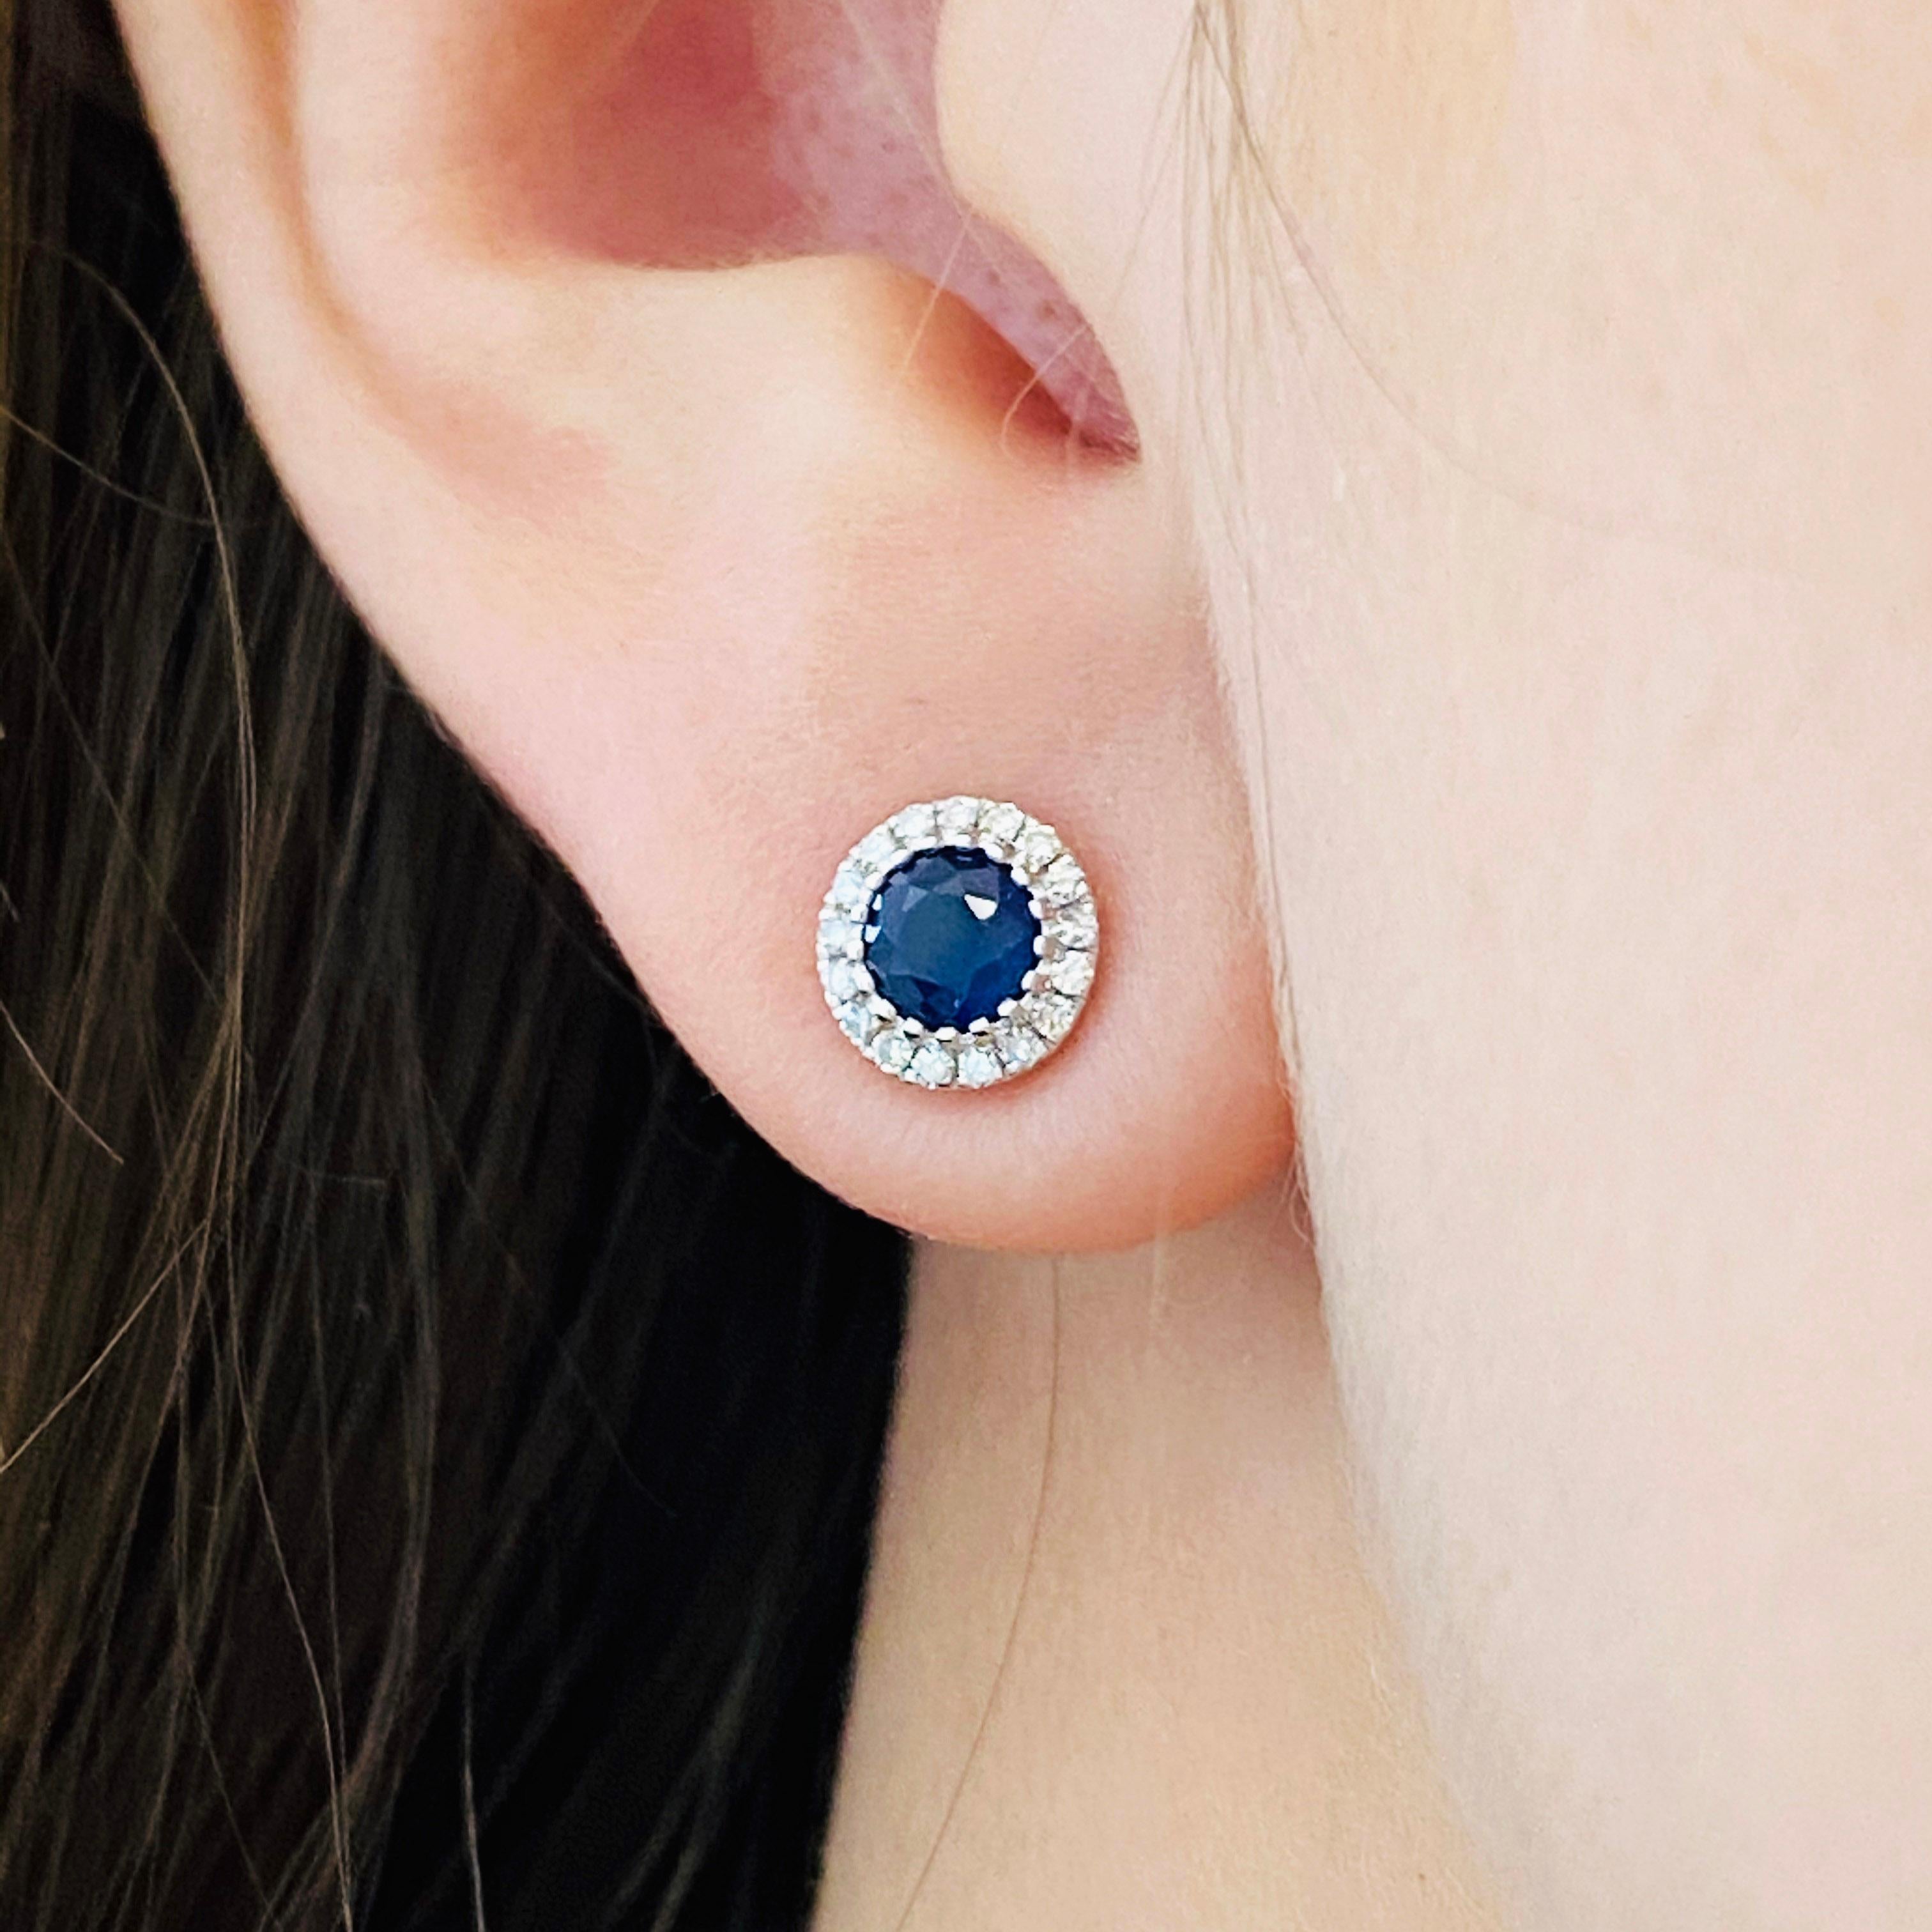 Unglaubliche Ohrringe aus Saphiren und Diamanten mit Diamantenhalo:
14kt Weißgold
.70 CT Blauer Saphir Gesamtgewicht
.11 CT Weißer Diamant Gesamtgewicht (SI1 Klarheit und G Farbe)
Ohrring-Durchmesser: 6.43mm/.25in
Saphir-Durchmesser: